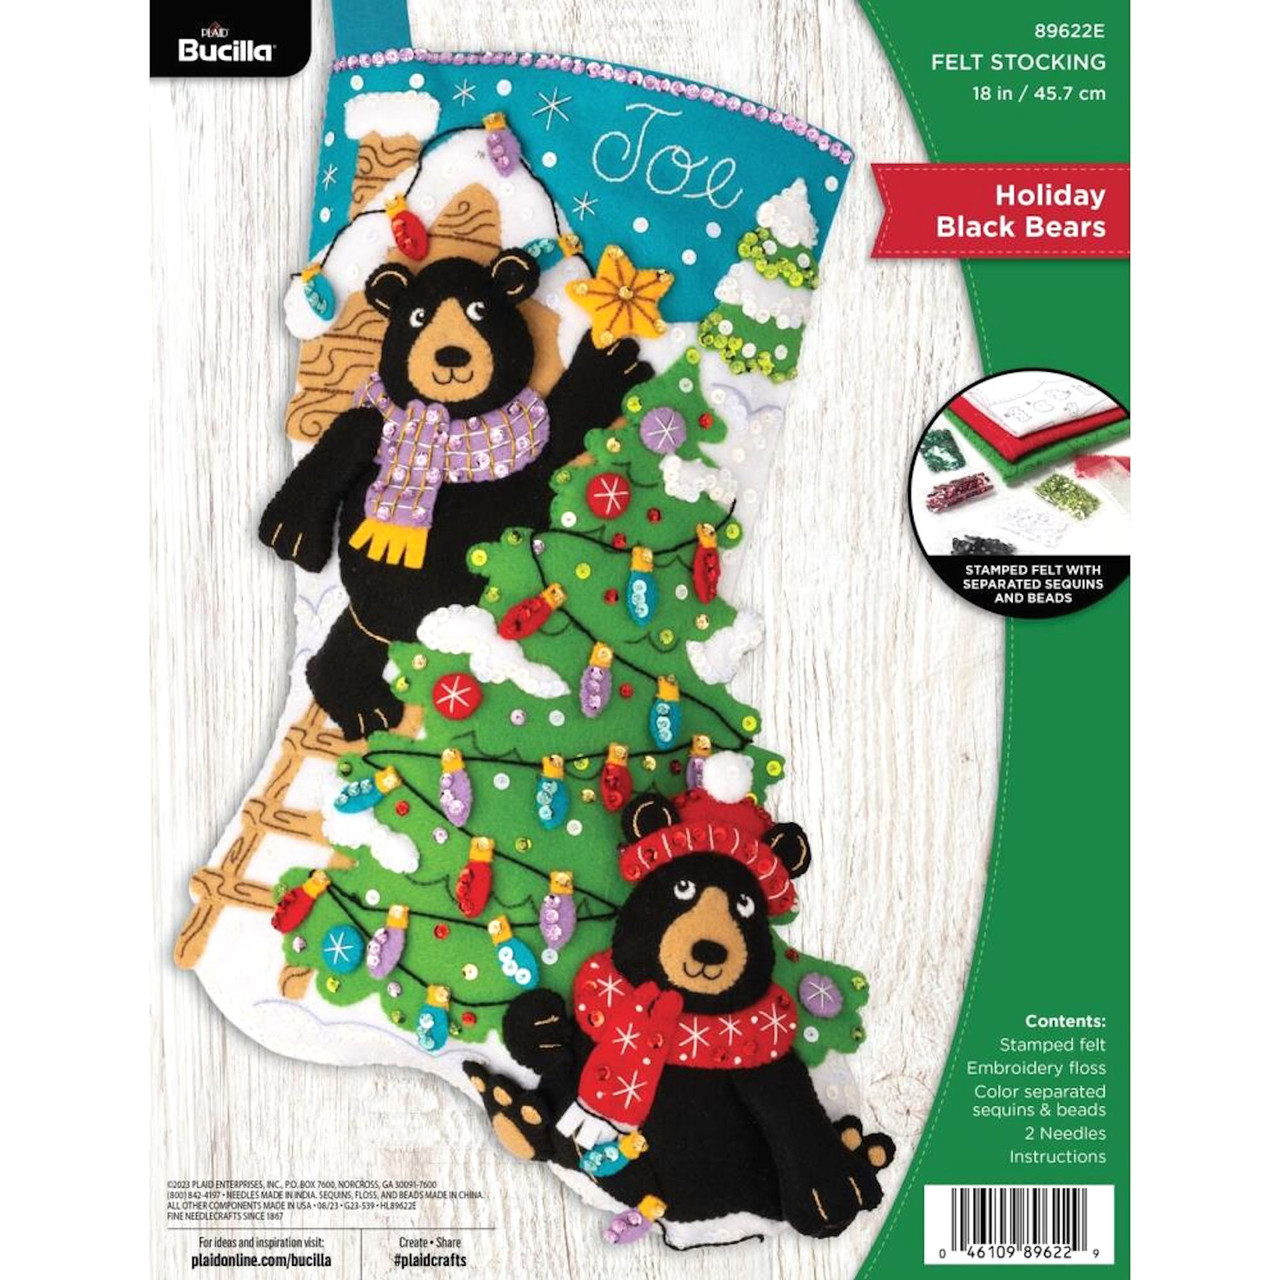 Shop Plaid Bucilla ® Seasonal - Felt - Ornament Kits - Holiday Black Bears  - 89665E - 89665E